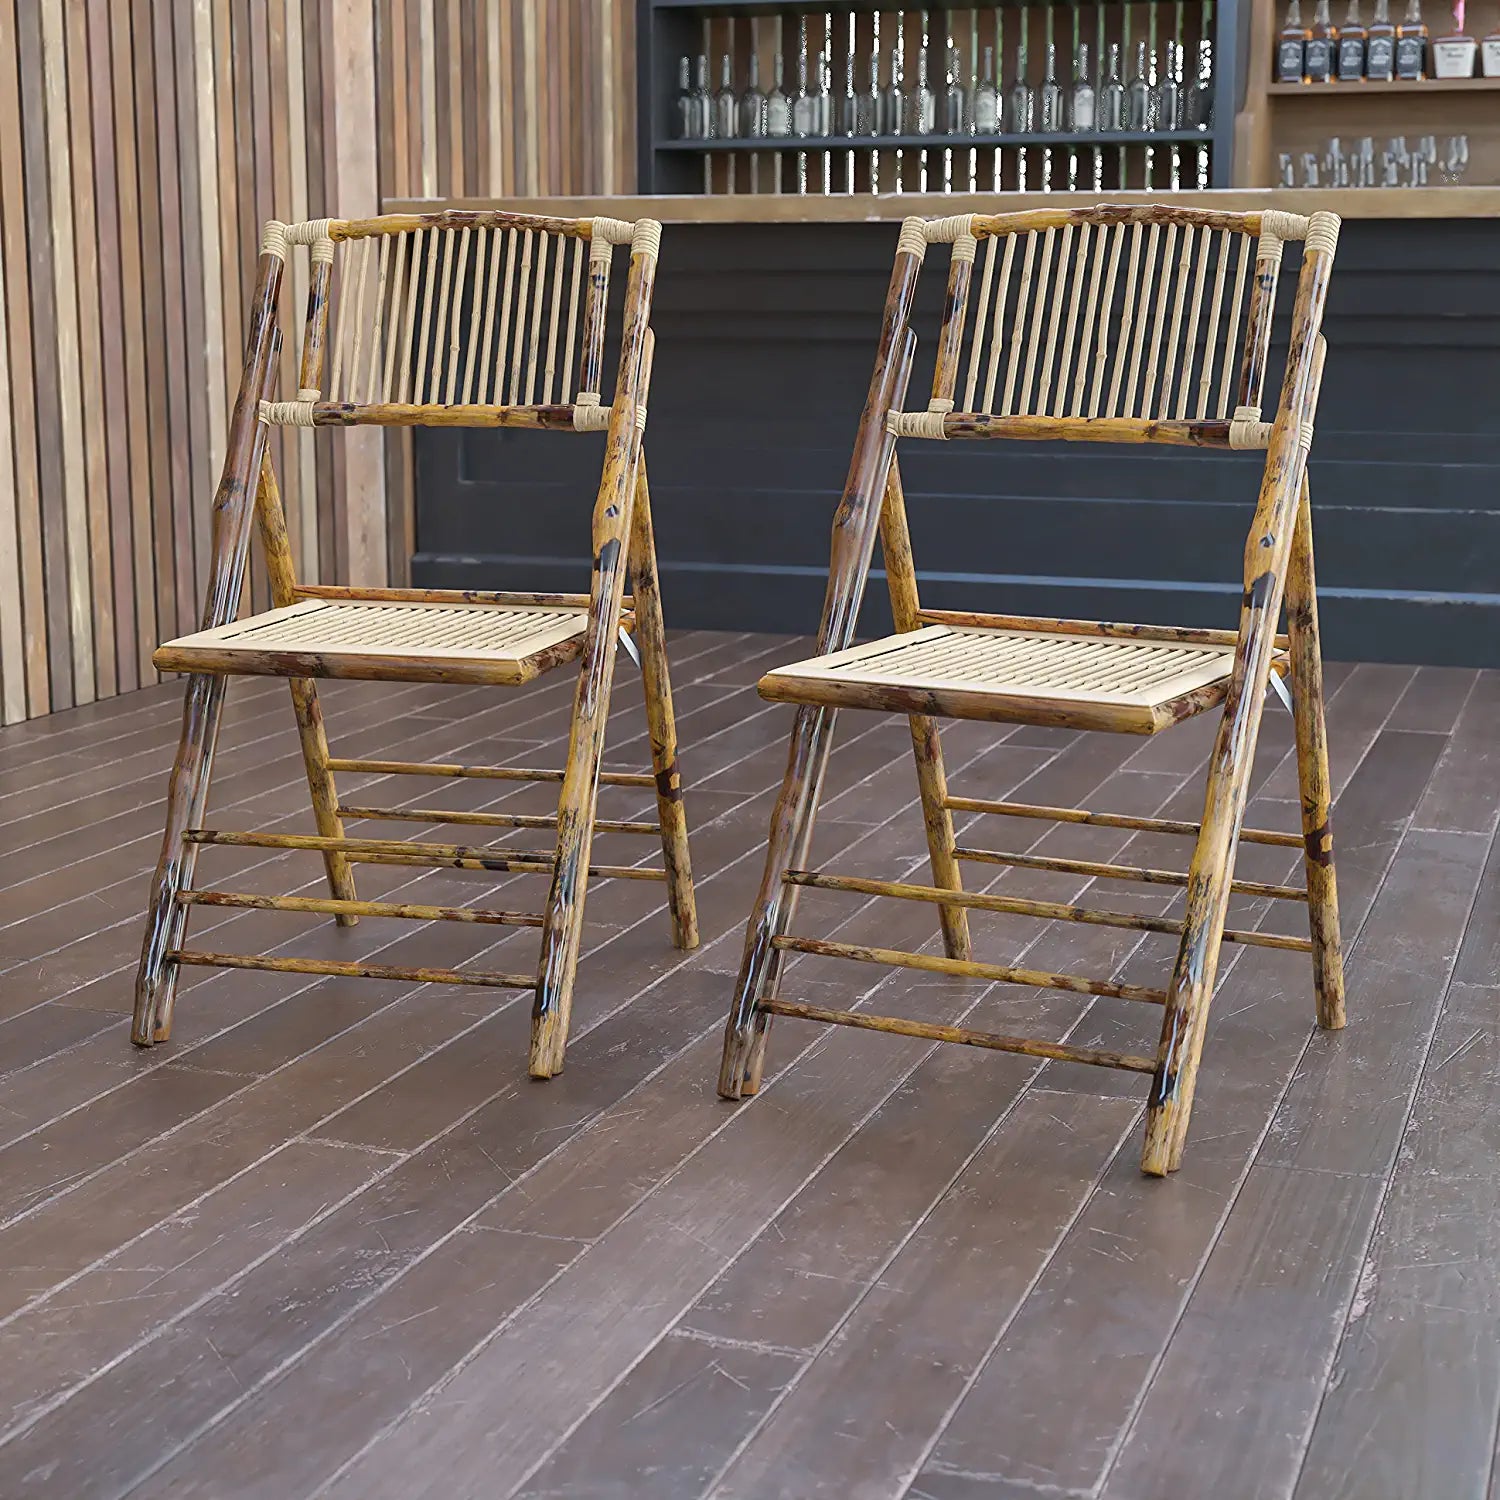 √É‚Äö√Ç¬†Set of 2 Bamboo Wood Folding Chairs